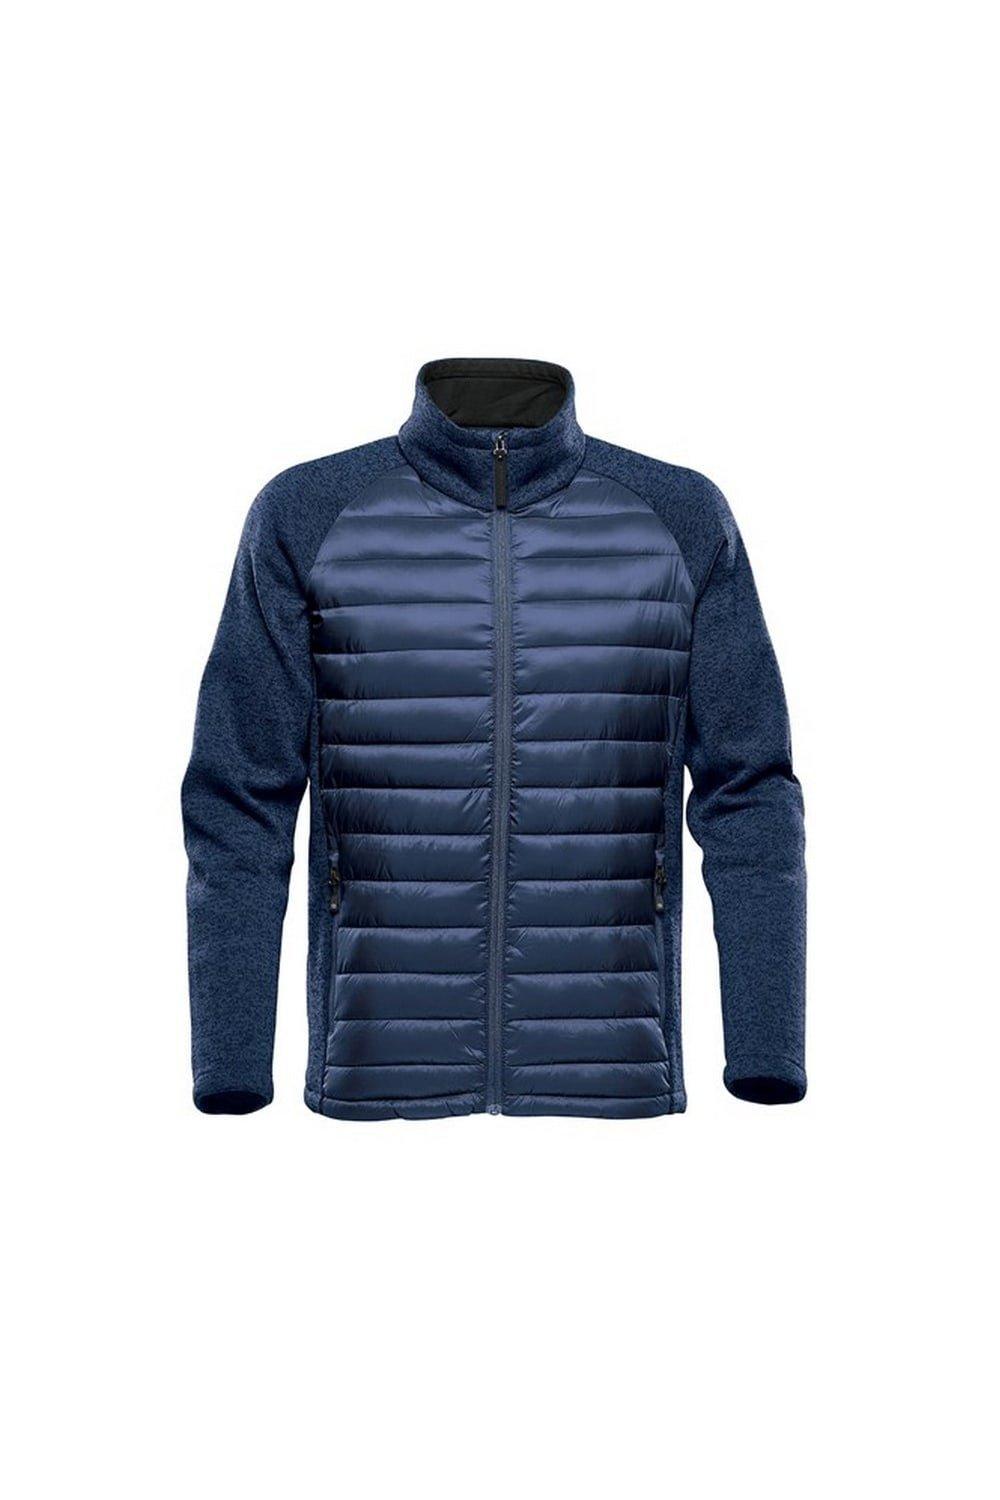 Легкая стеганая куртка Narvik Stormtech, синий легкая куртка pacifica stormtech темно синий